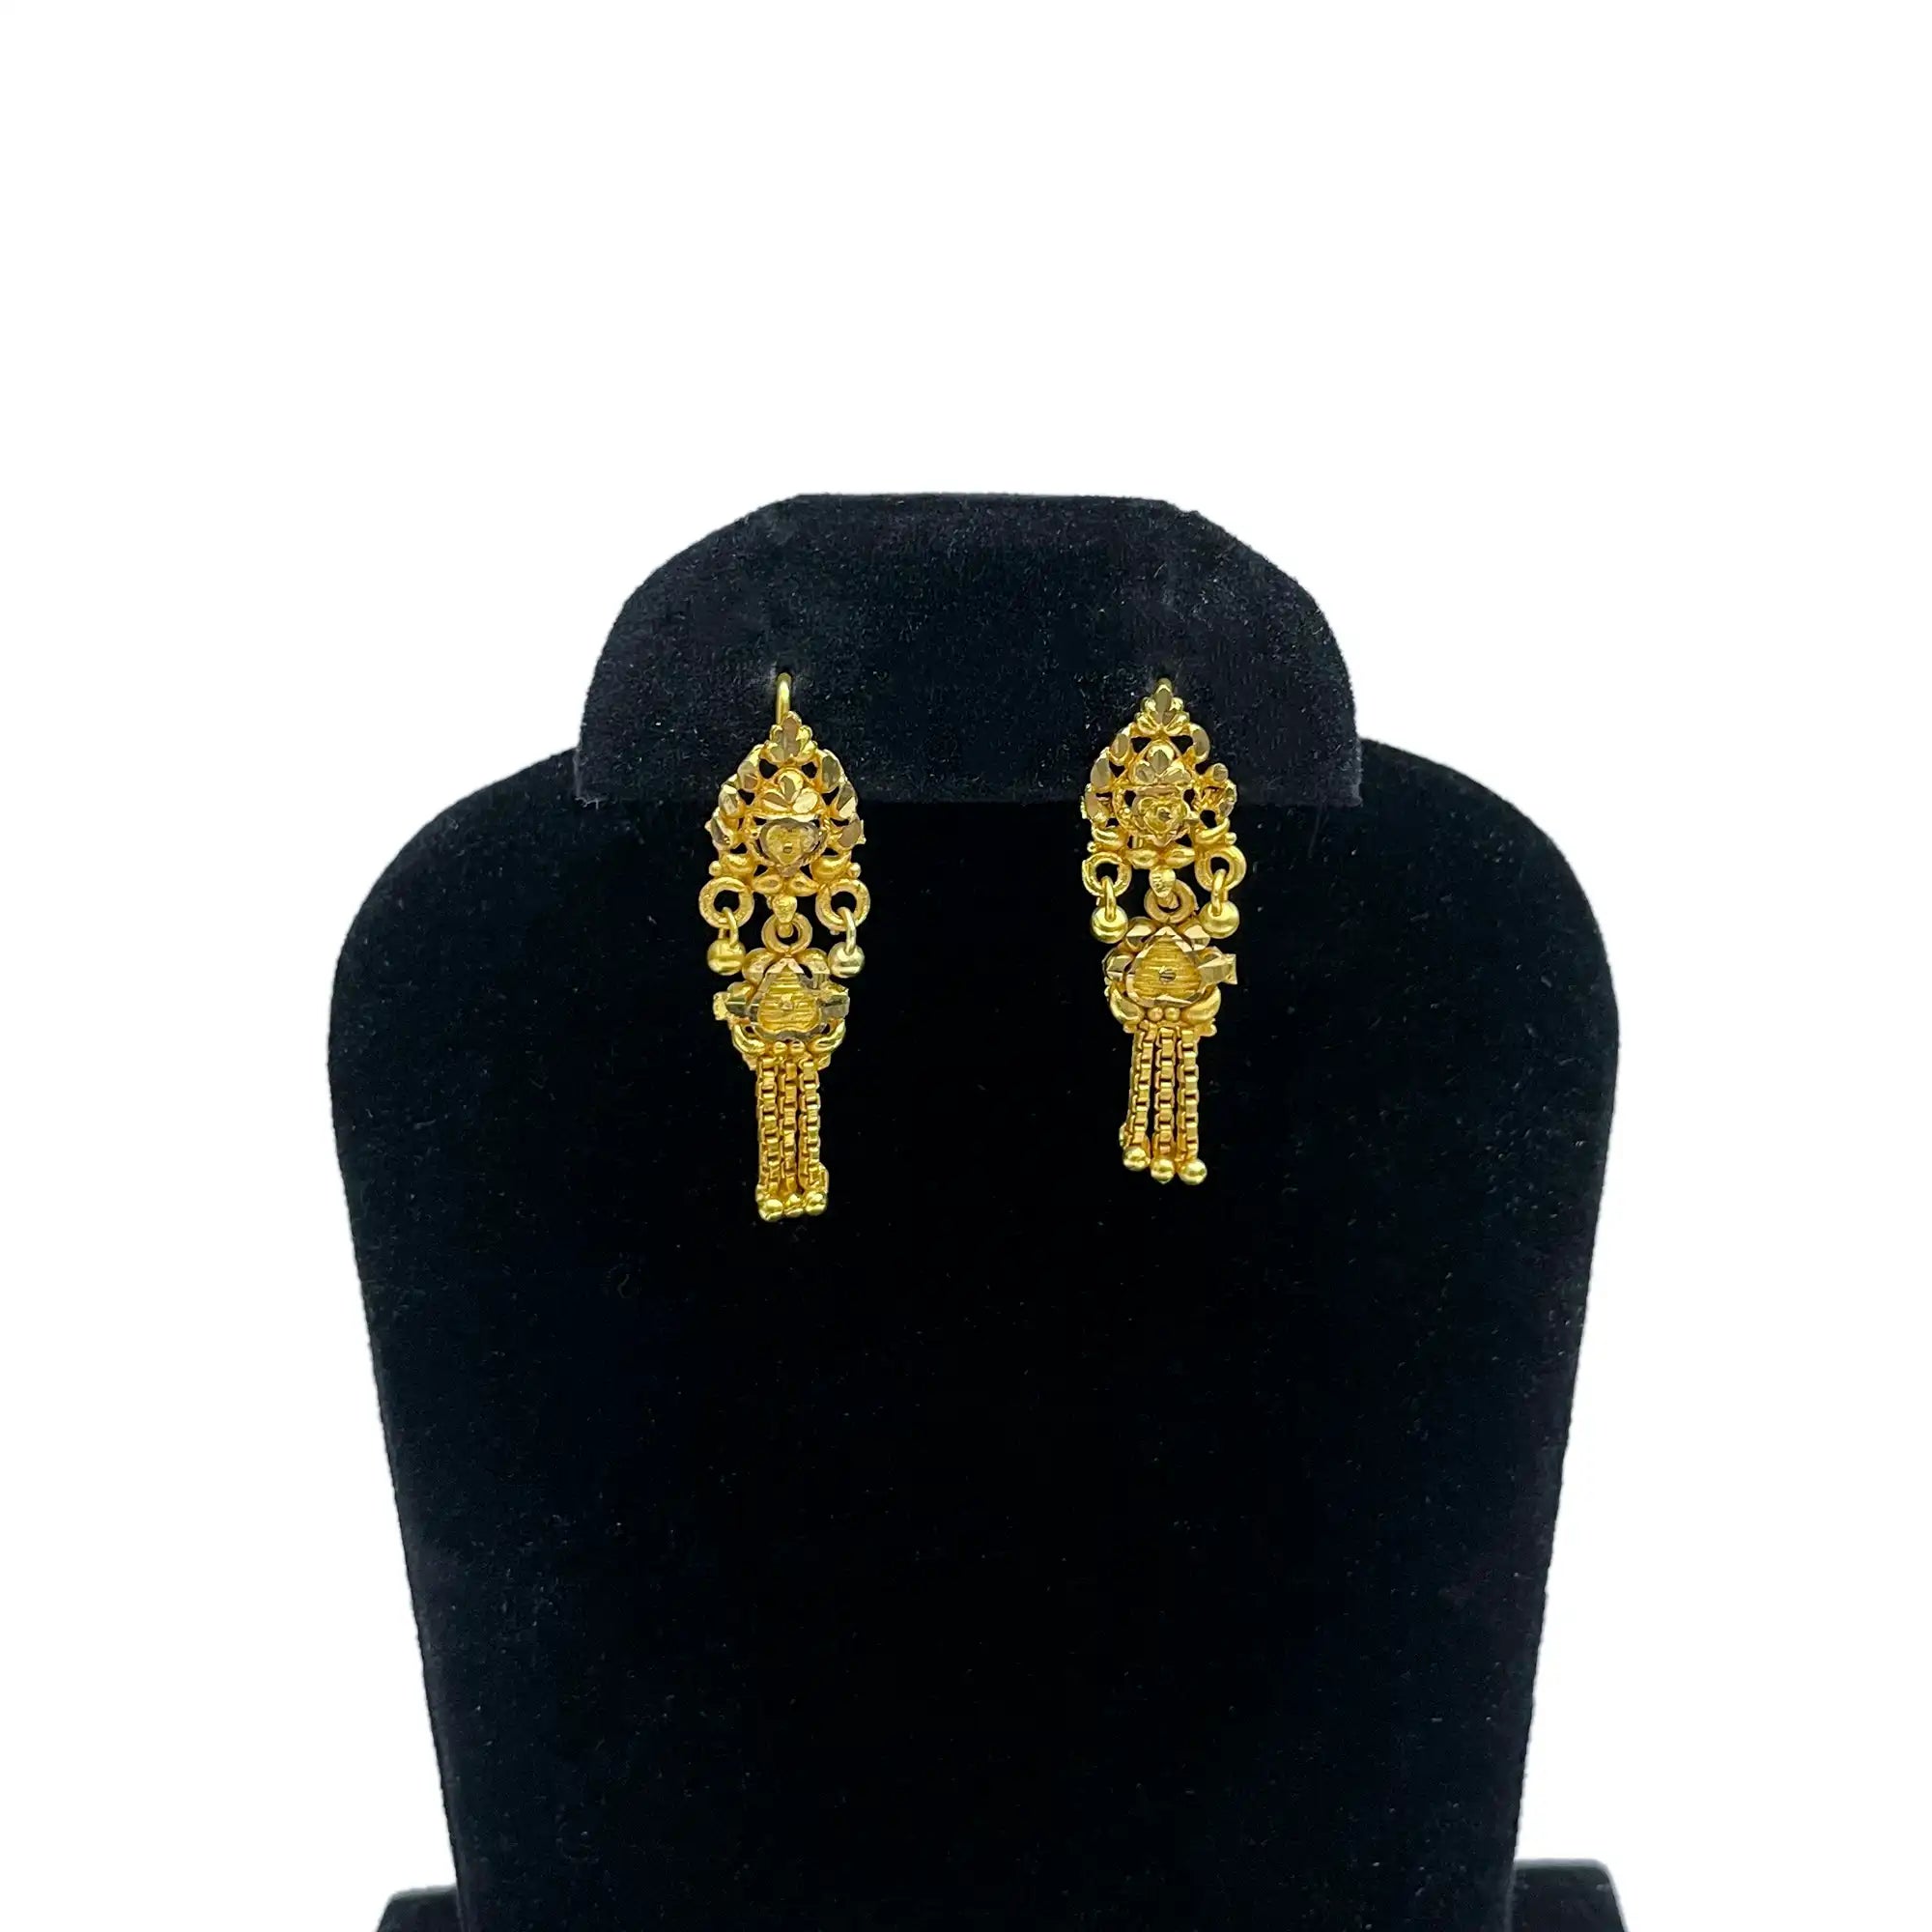 golden danglen earrings, drop earrings, long earrings, daily wearing earrings